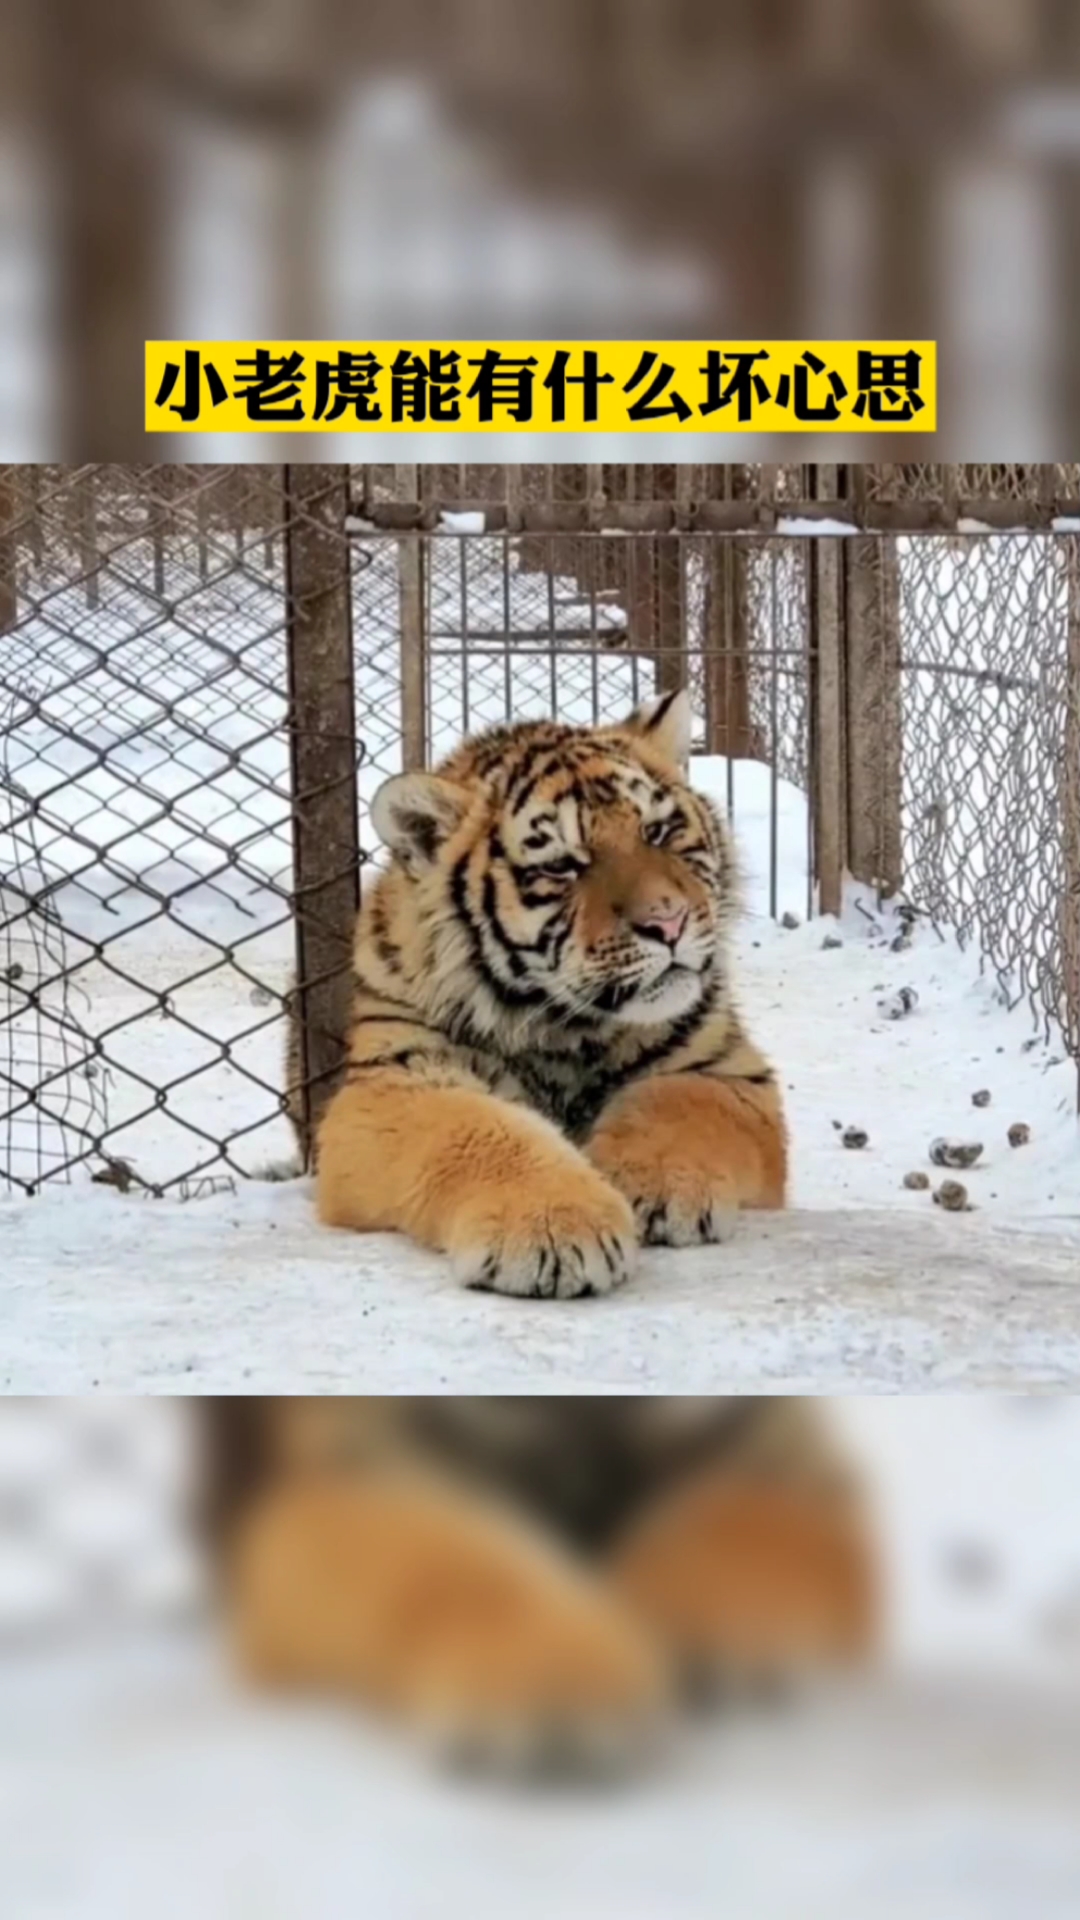 动物园的老虎这么都憨憨的